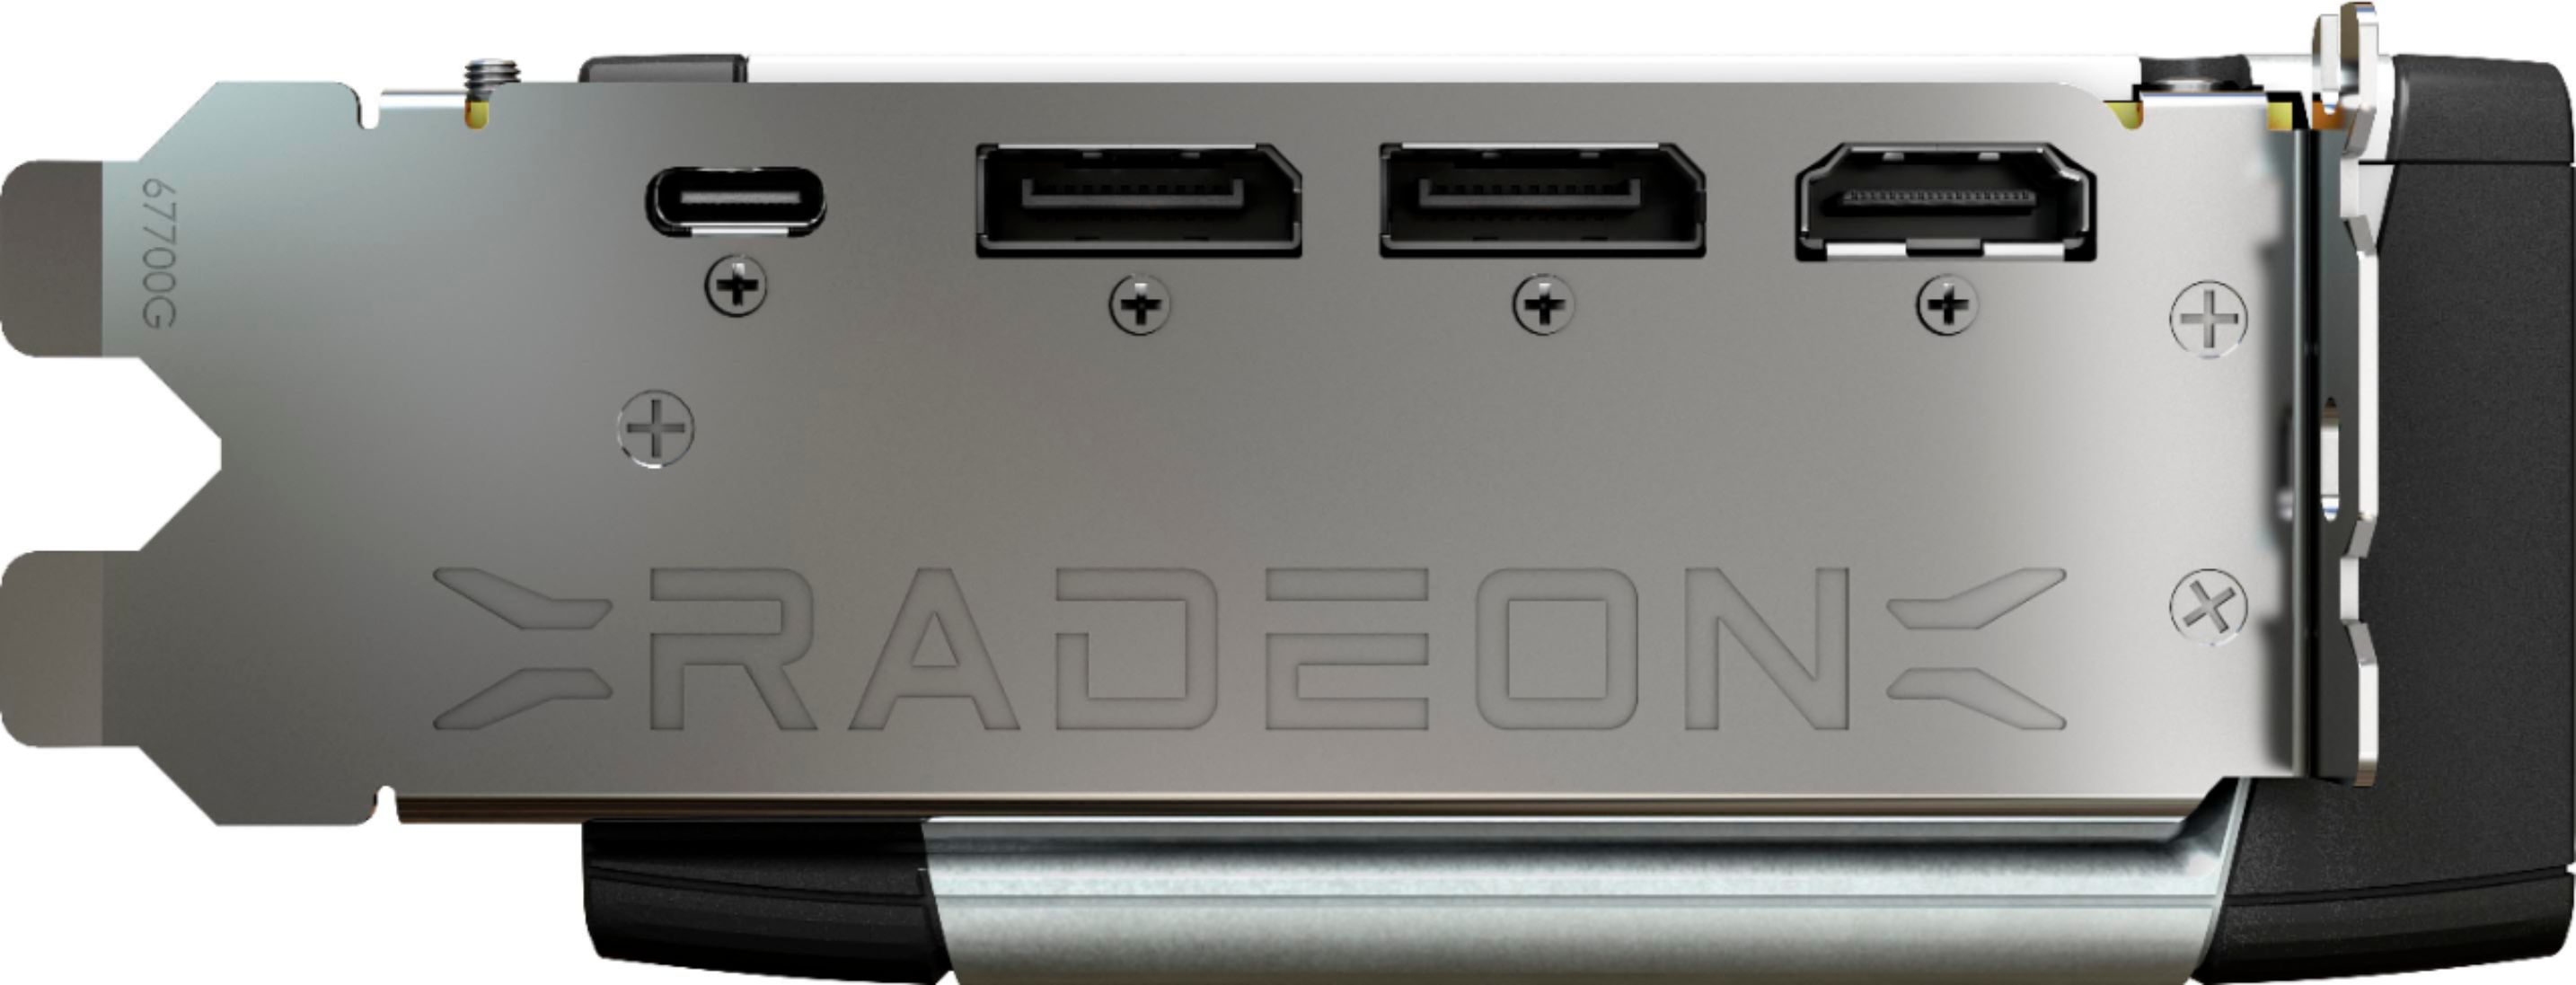 MSI Gaming Radeon RX 6800 XT 16GB GDRR6 256  